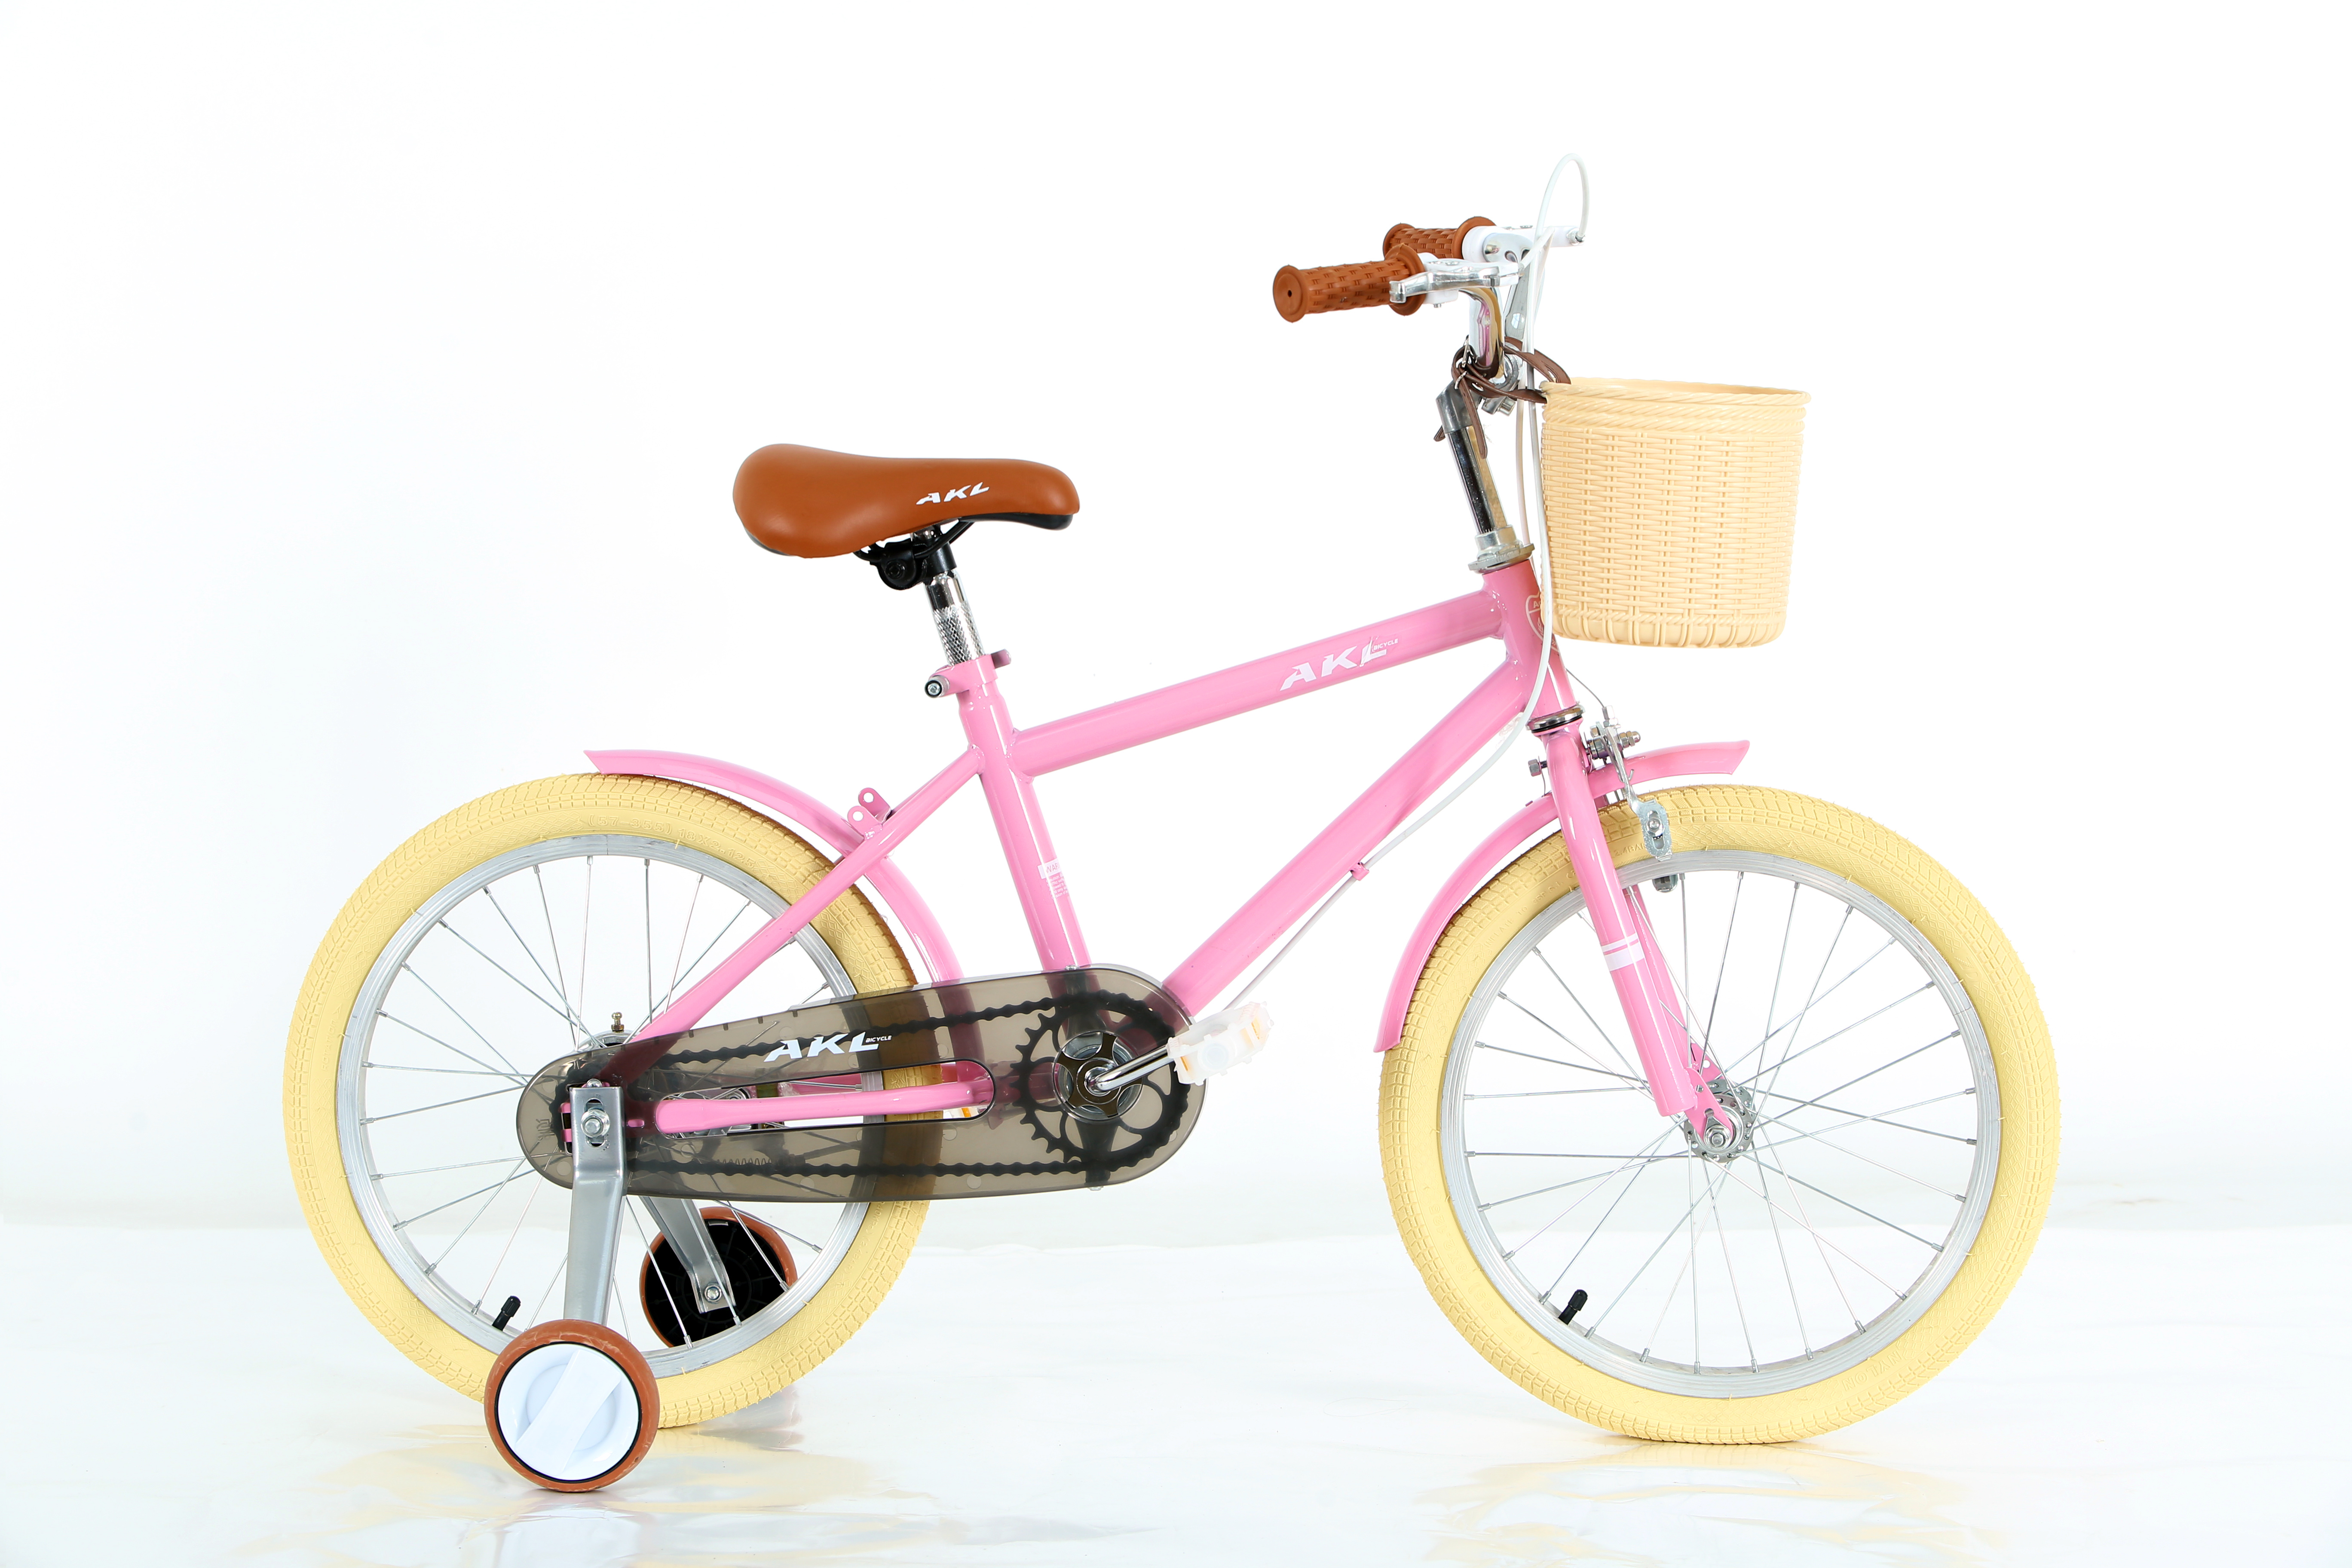 儿童自行车 粉绿灰三色田园风格儿童自行车 轻便安全可爱设计 适合3-6岁小朋友骑行学习详情图2